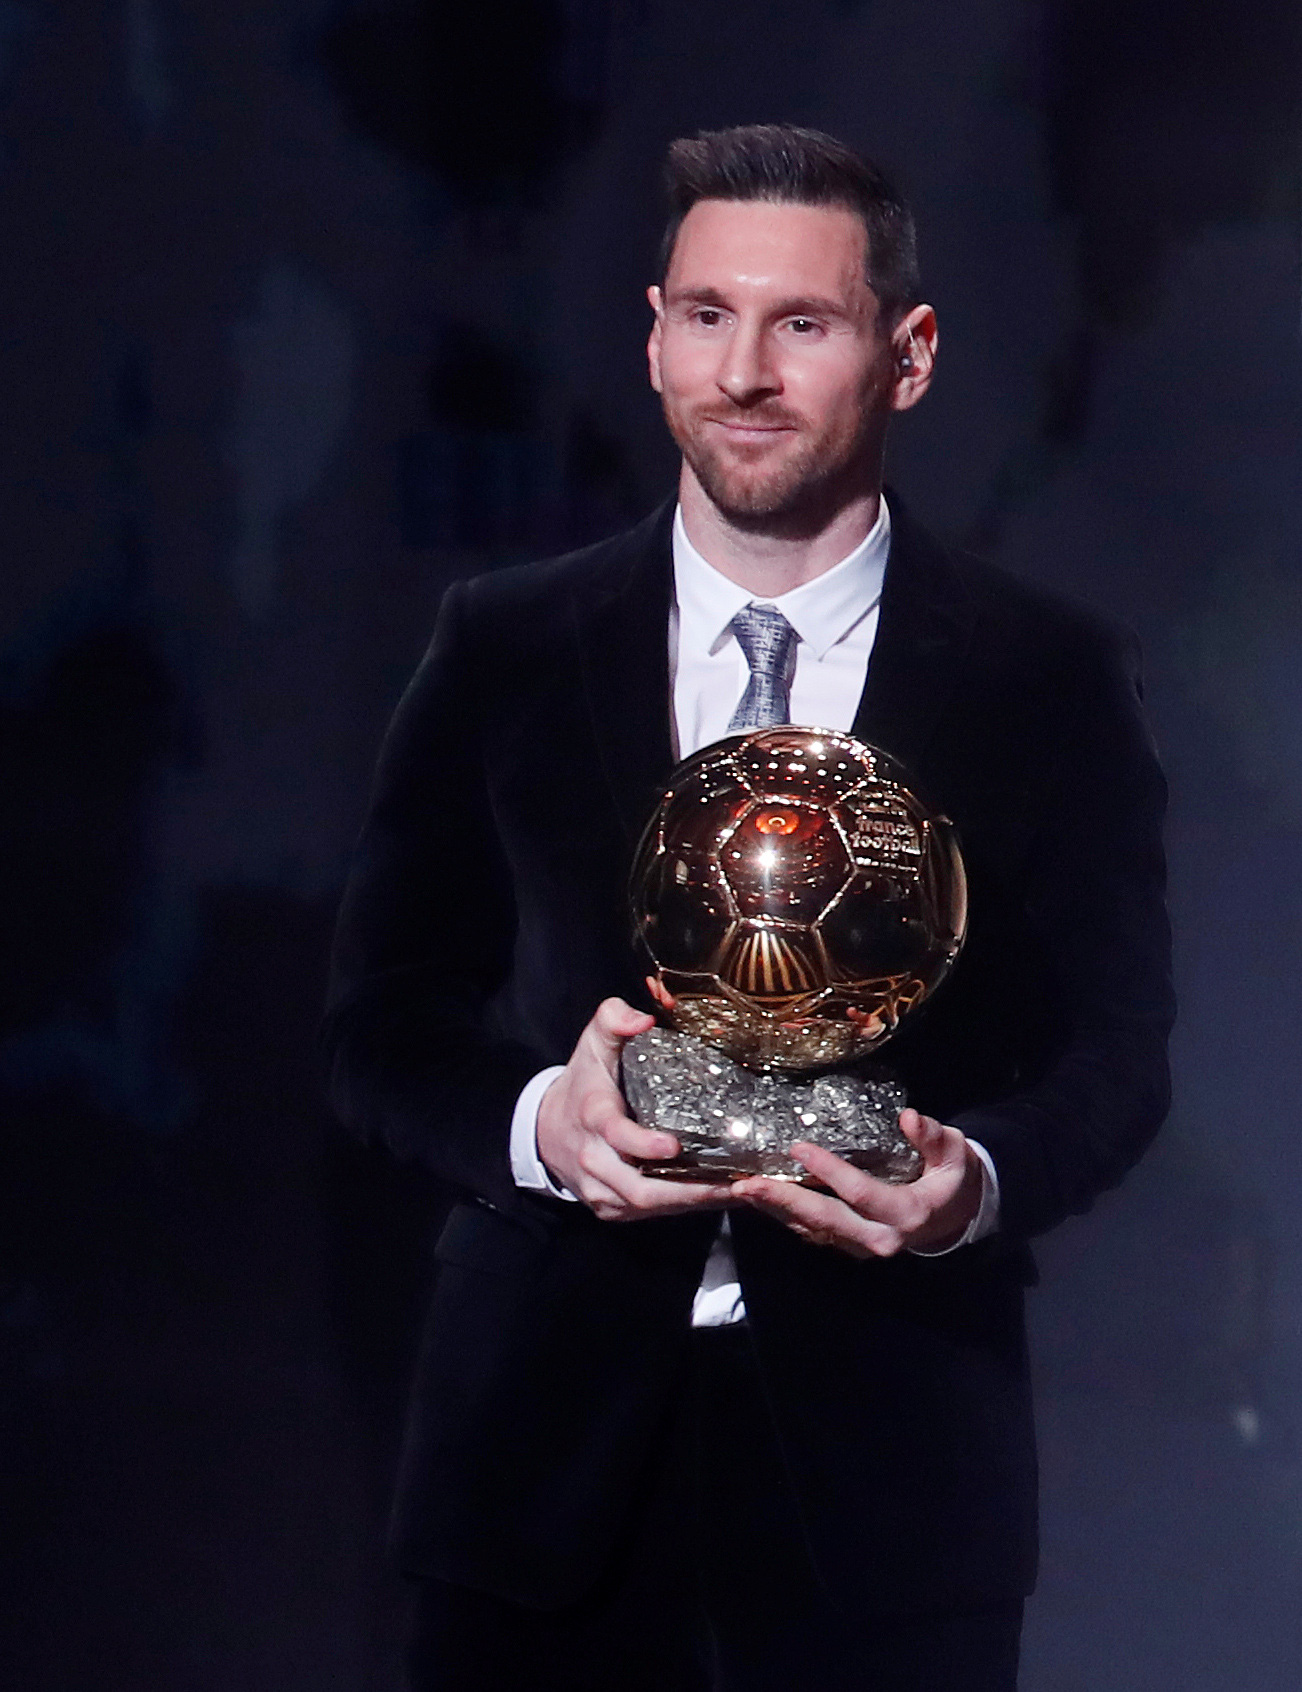 Quả bóng vàng là giải thưởng danh giá dành cho cầu thủ vĩ đại nhất năm. Cùng chiêm ngưỡng hình ảnh chiếc quả bóng vàng rực sáng và đầy ngọt ngào để chứng kiến những kỷ lục được tạo ra trong làng bóng đá.